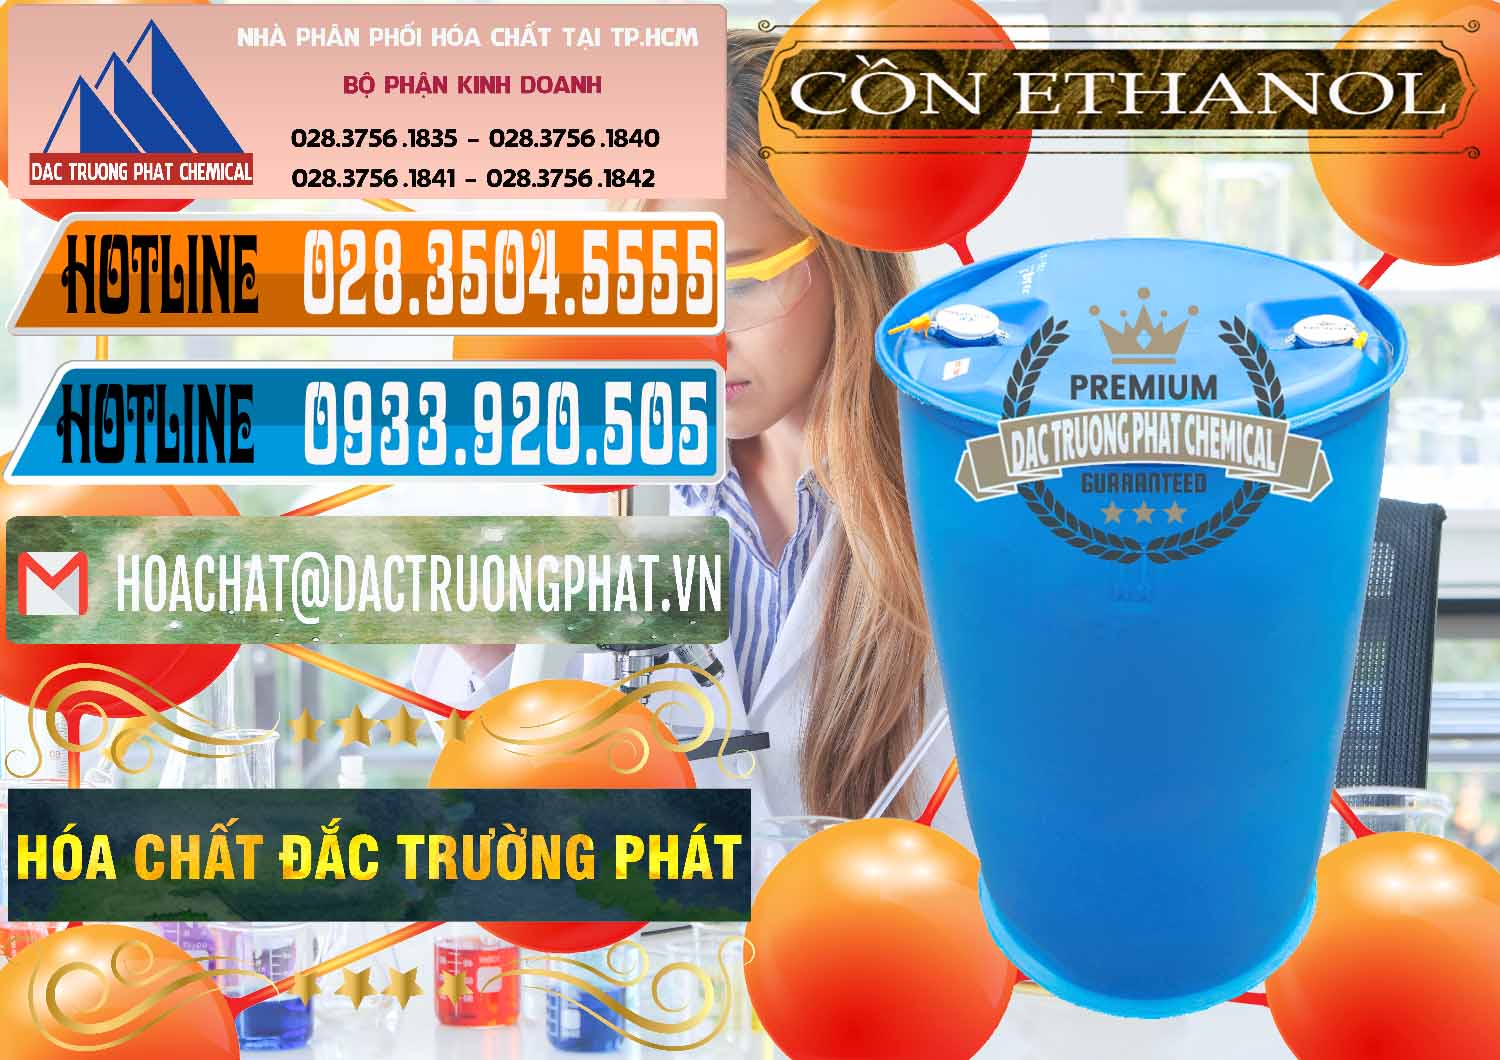 Đơn vị nhập khẩu - bán Cồn Ethanol - C2H5OH Thực Phẩm Food Grade Việt Nam - 0330 - Nơi chuyên bán & phân phối hóa chất tại TP.HCM - stmp.net